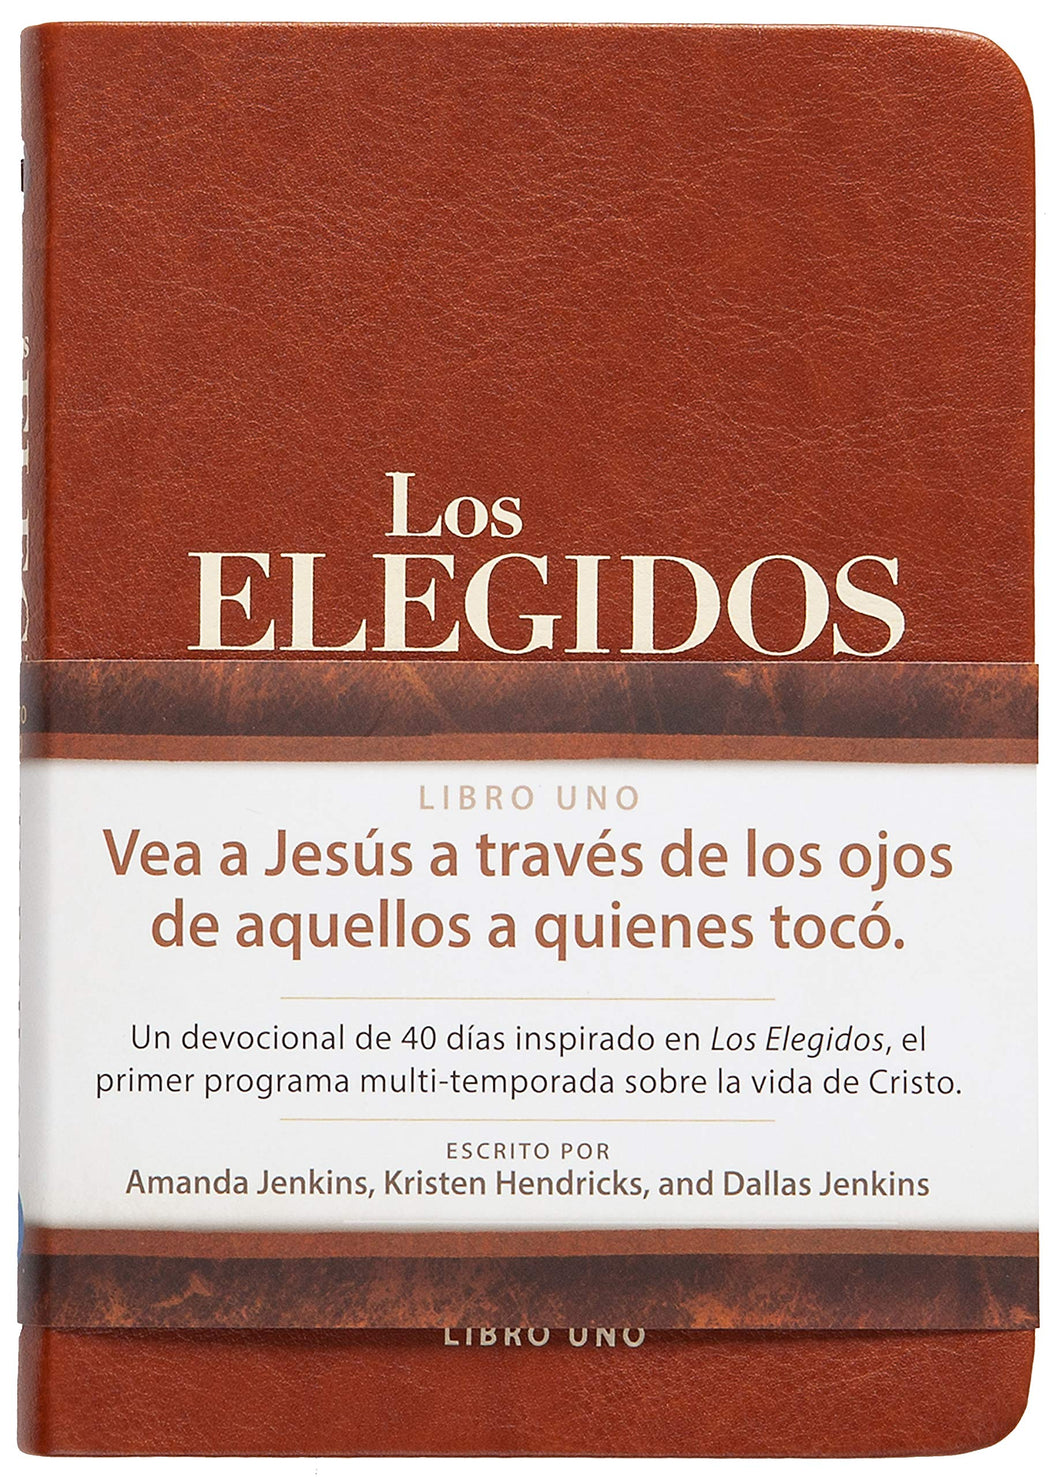 LOS ELEGIDOS- LIBRO UNO 40 DIAS CON JESÚS